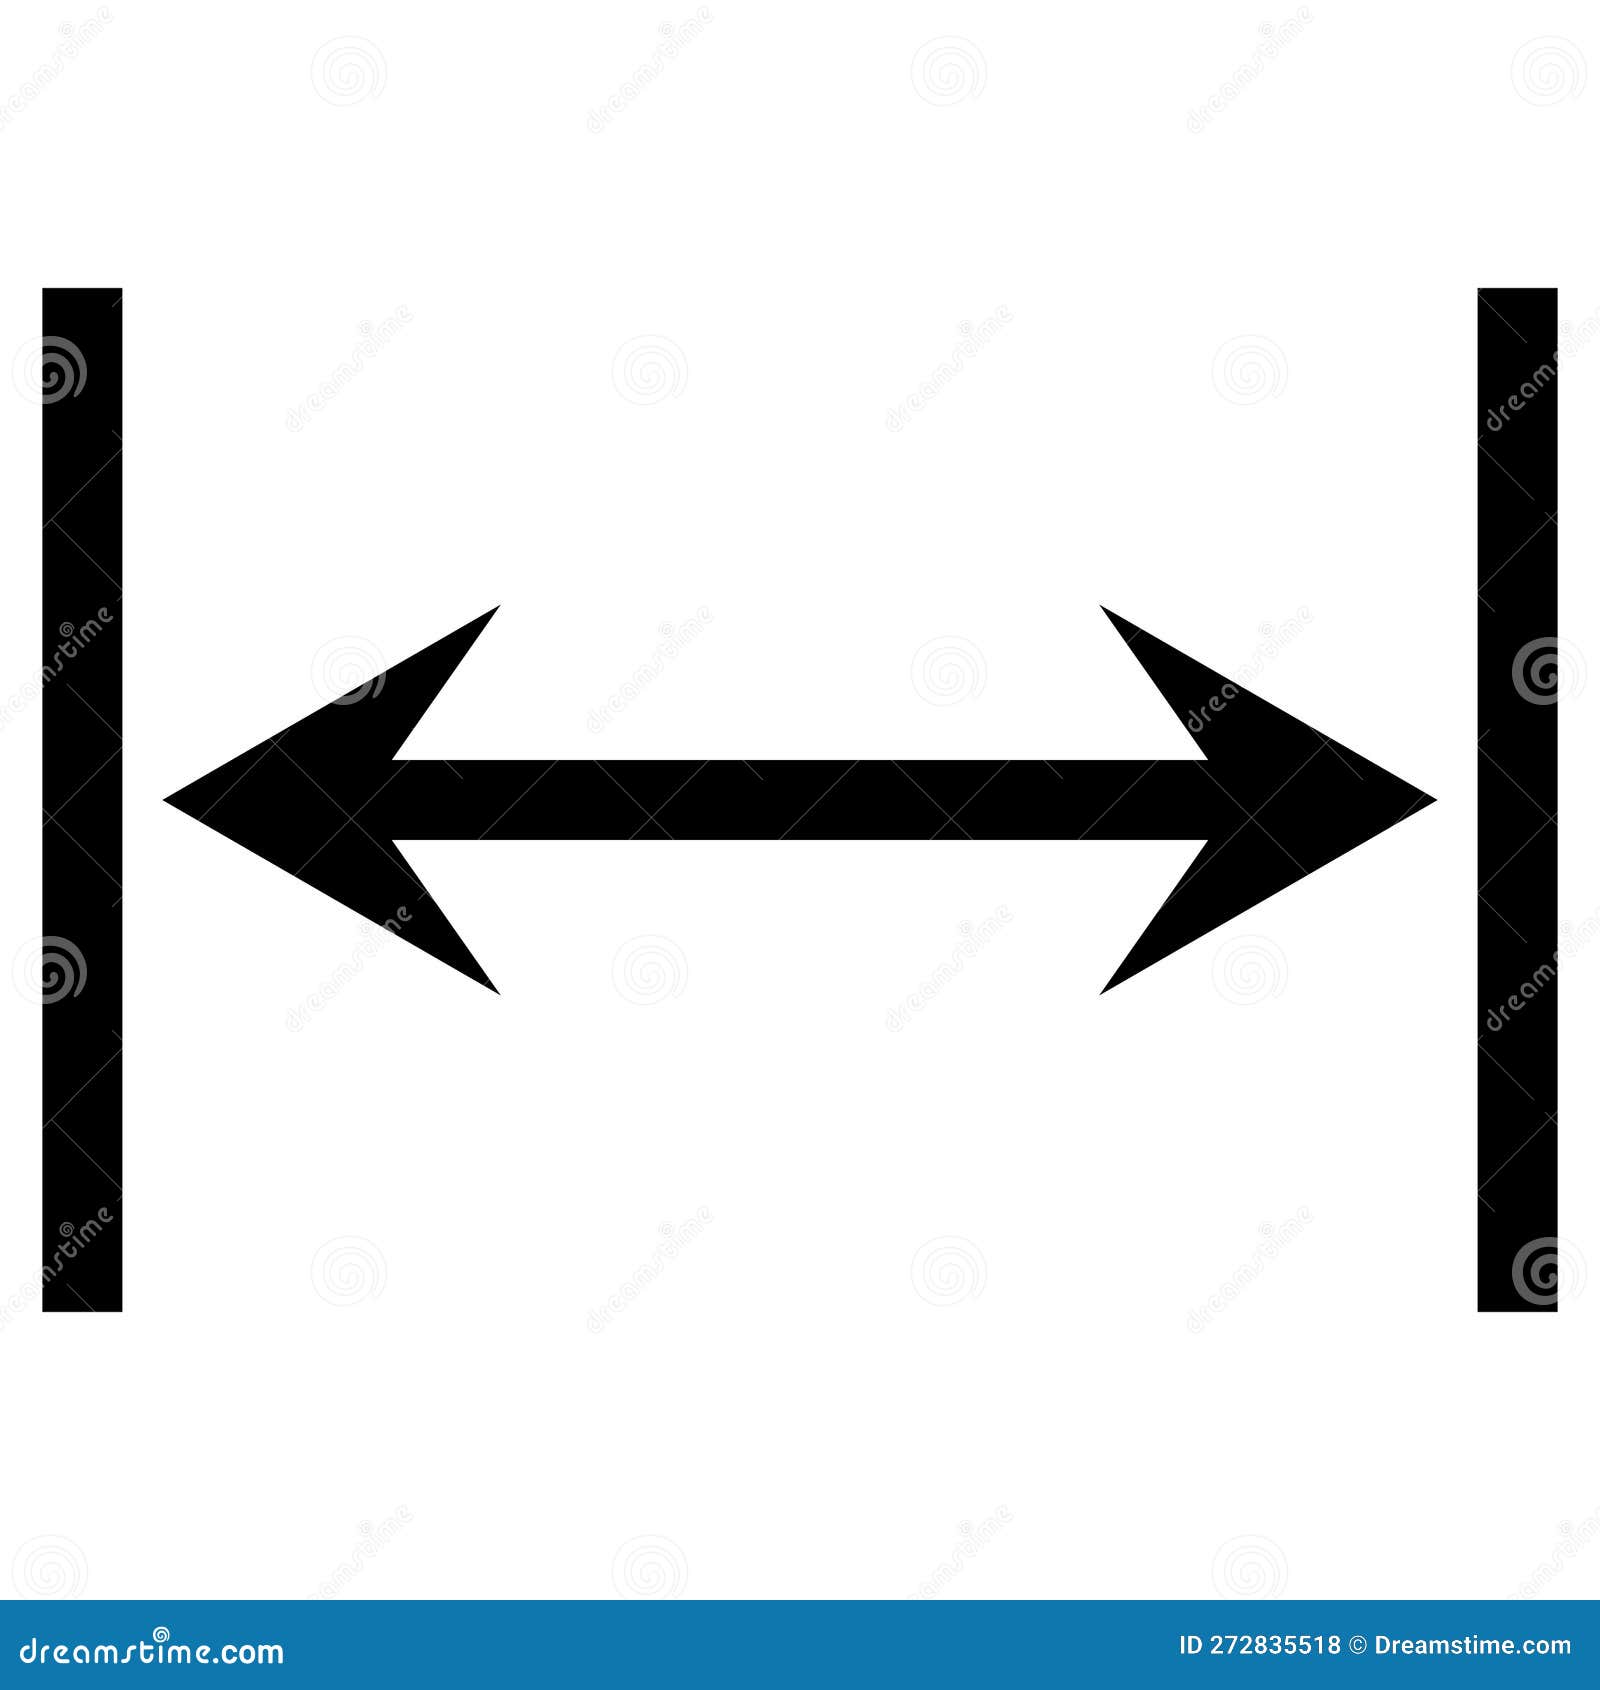 dual arrow line icon, equivalent width , width distance measurement